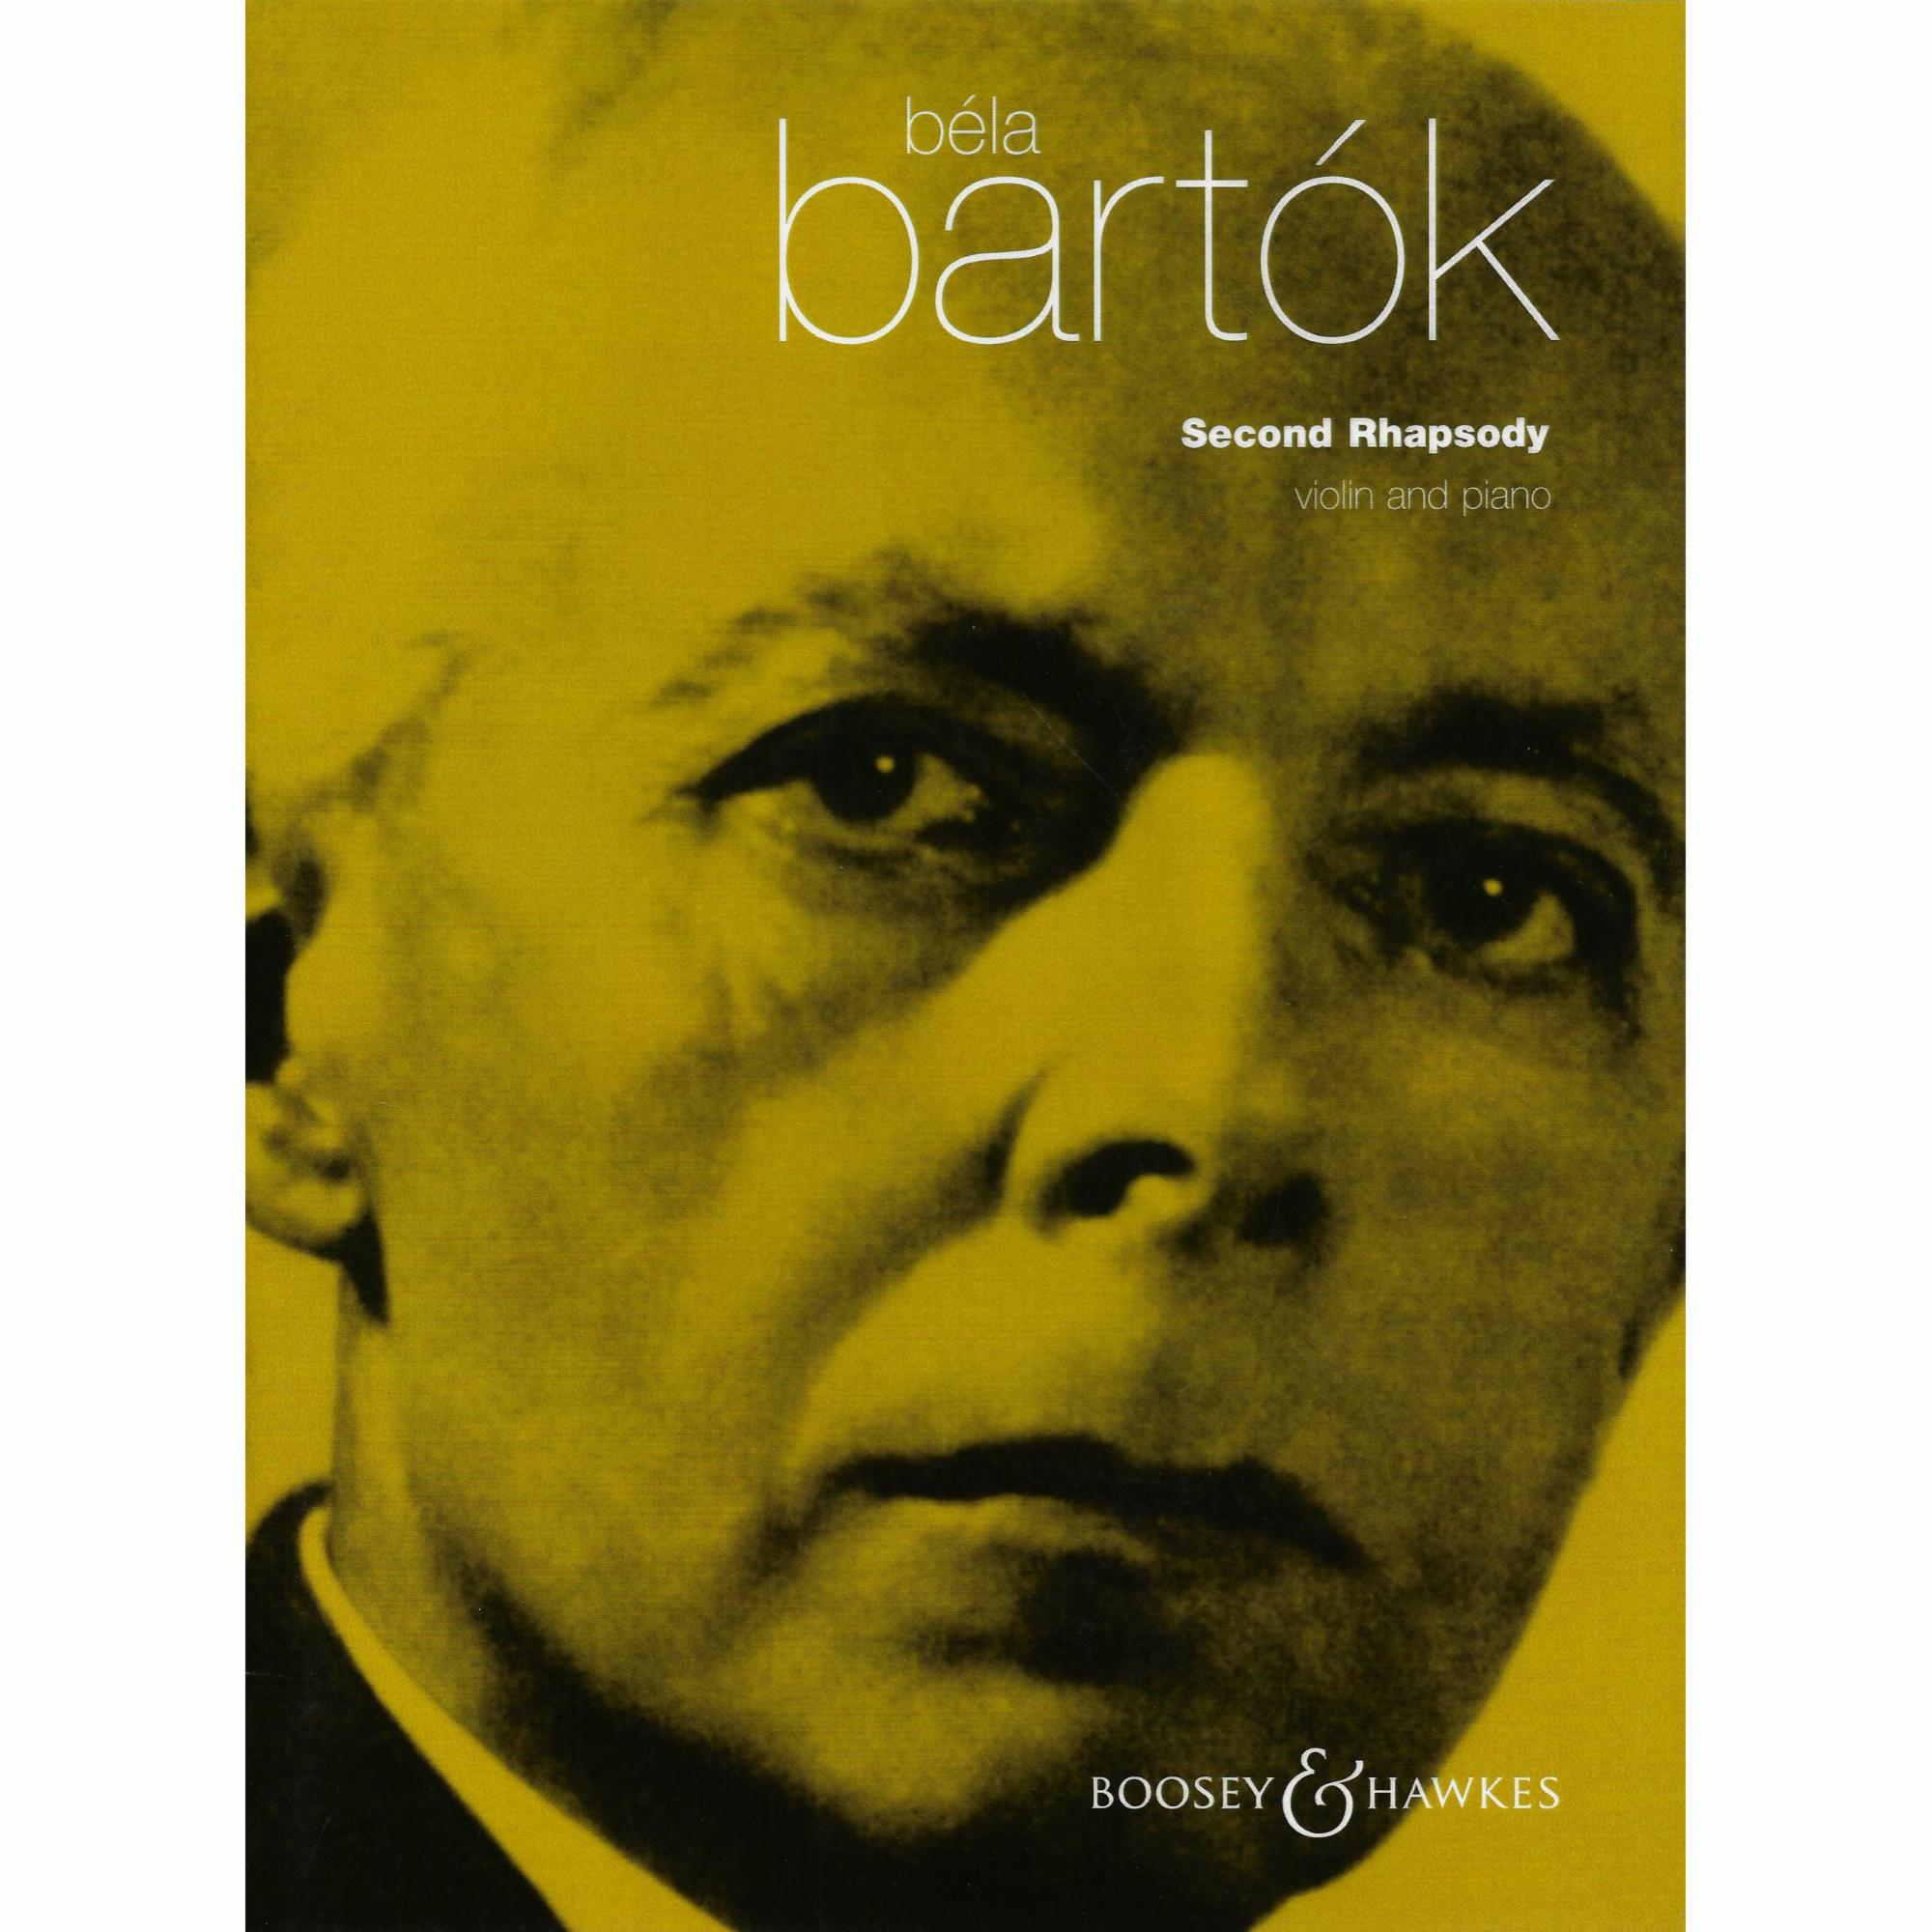 Bartok -- Second Rhapsody for Violin and Piano